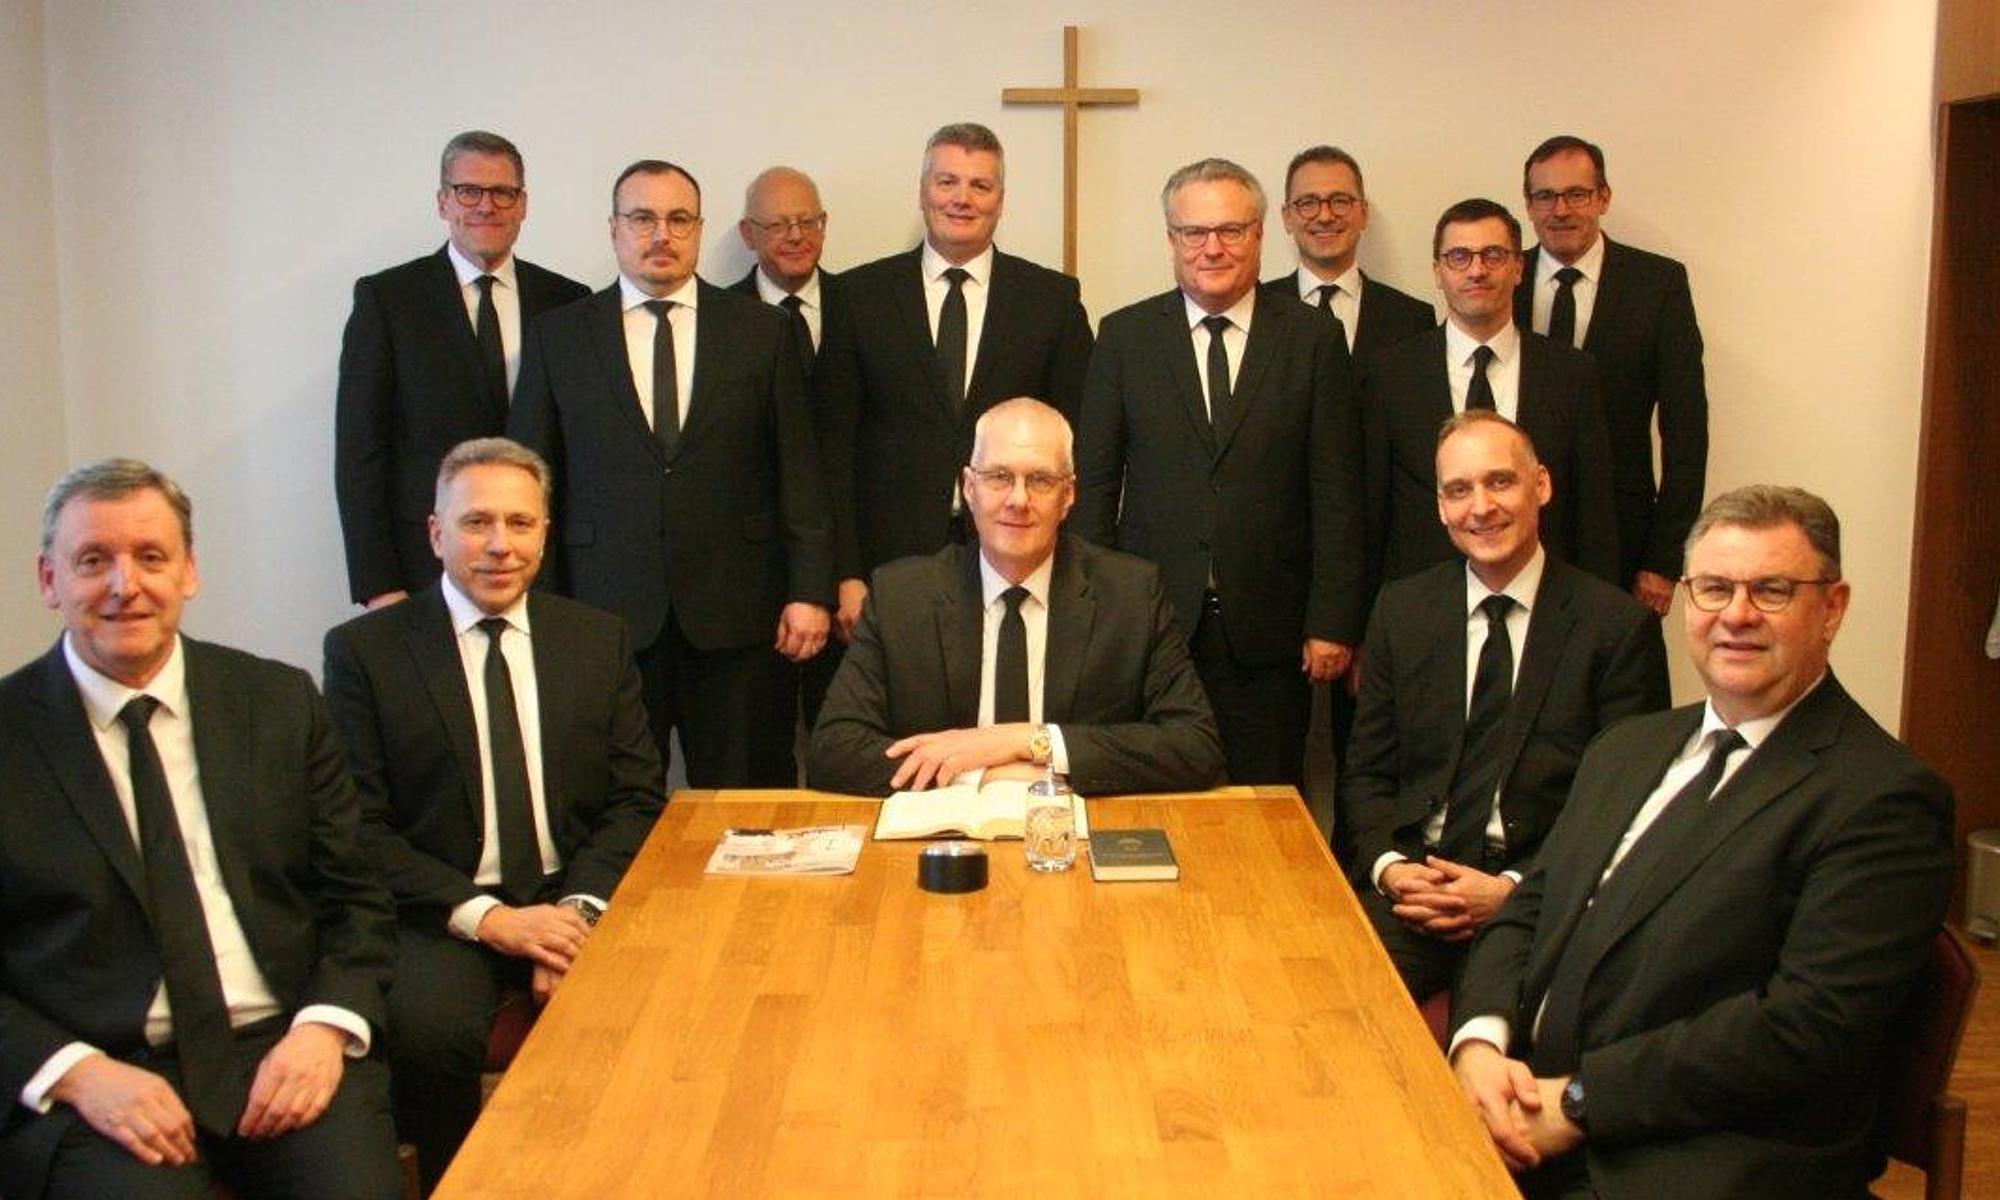 Bezirksapostel Michael Ehrich (Mitte) mit den süddeutschen Aposteln und Bischöfen